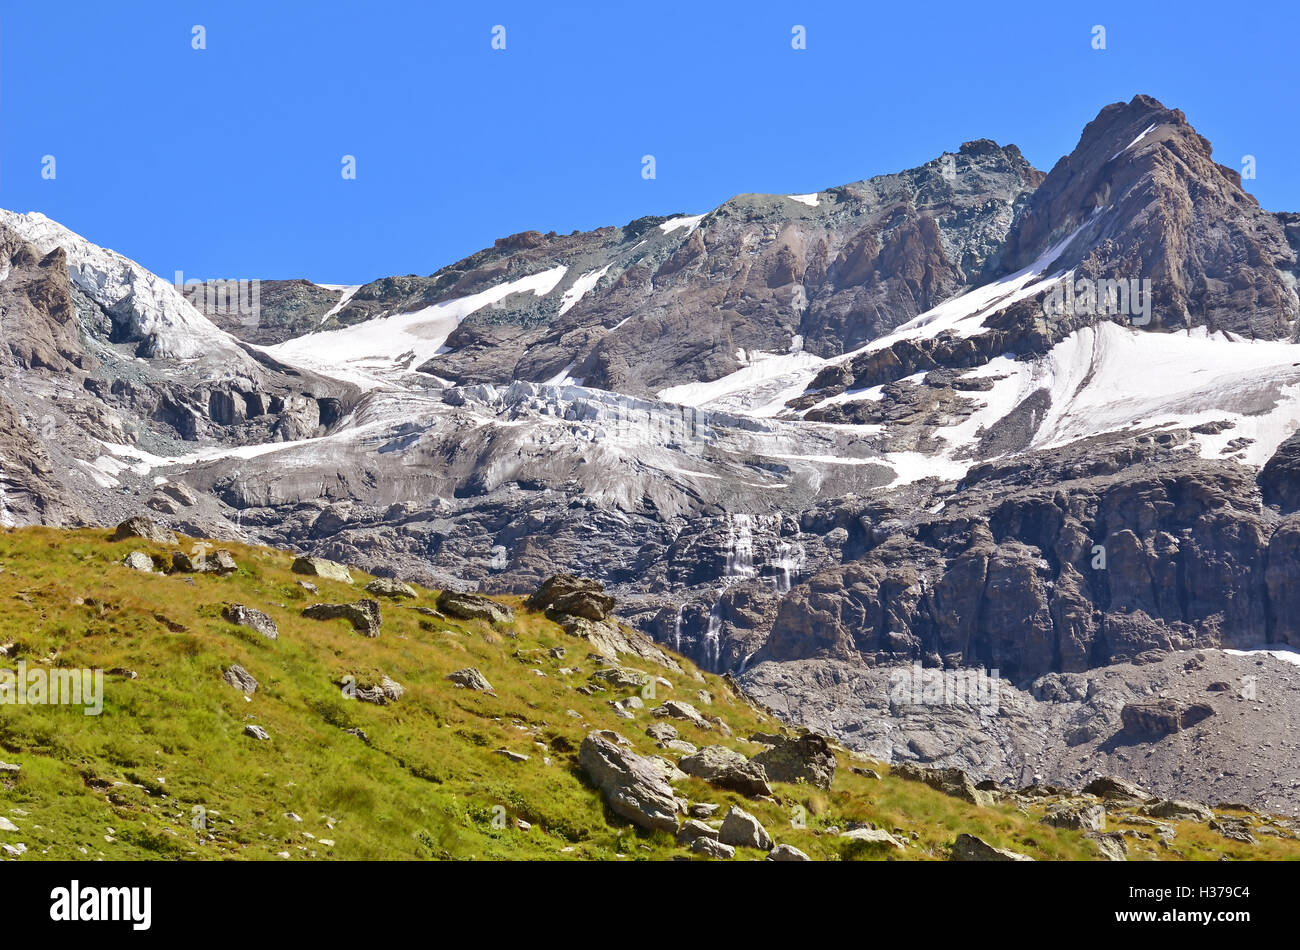 La Grande tête de par le glacier Sonadon et dans le massif du Grand Combin, sur la frontière italienne suisse Banque D'Images